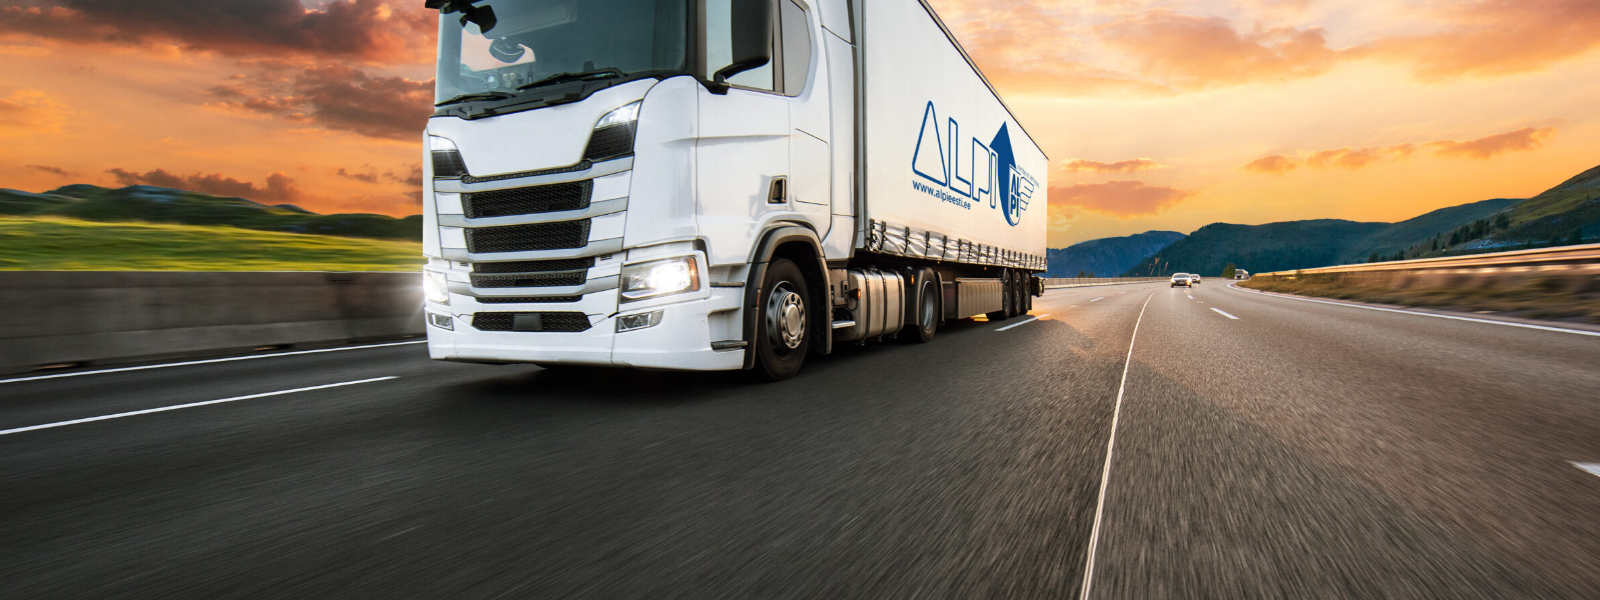 ALPI EESTI OÜ - Ettevõte pakub laialdast logistikateenuste spektrit, hõlmates transporti, kaubandustegevust, tarnimist ...